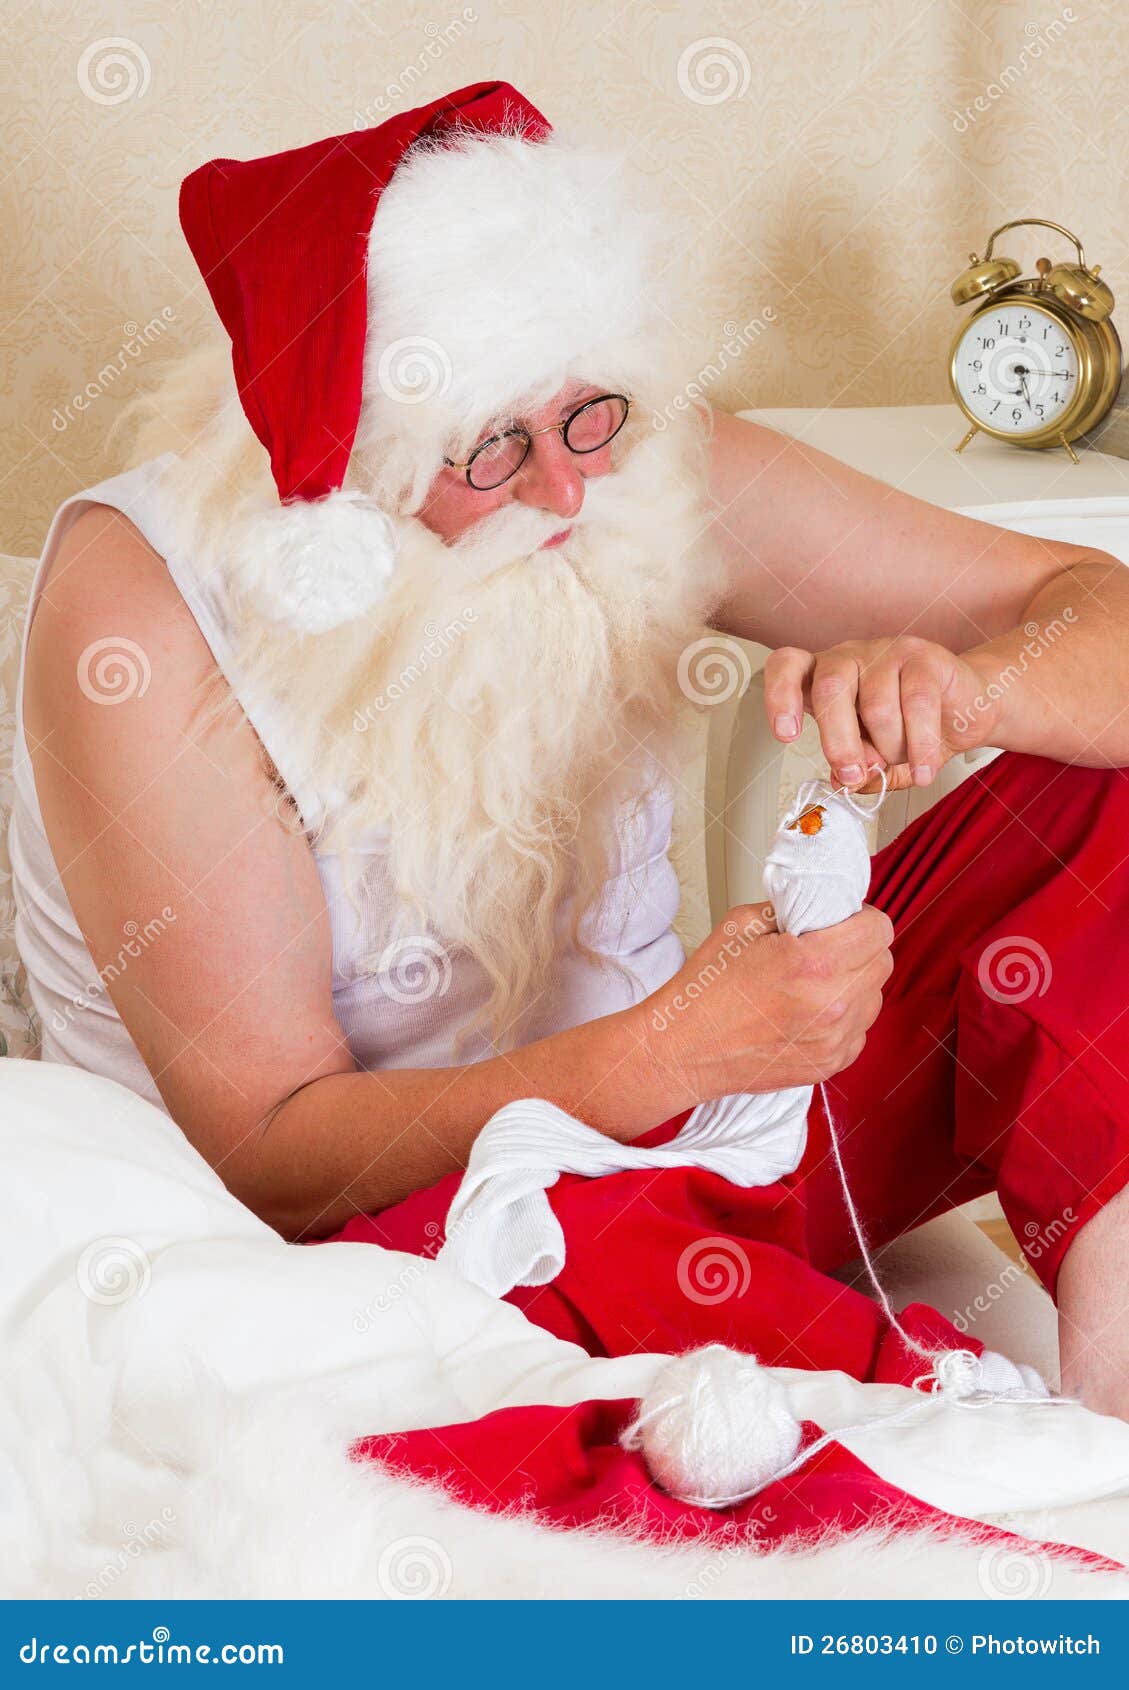 santa claus mending his socks